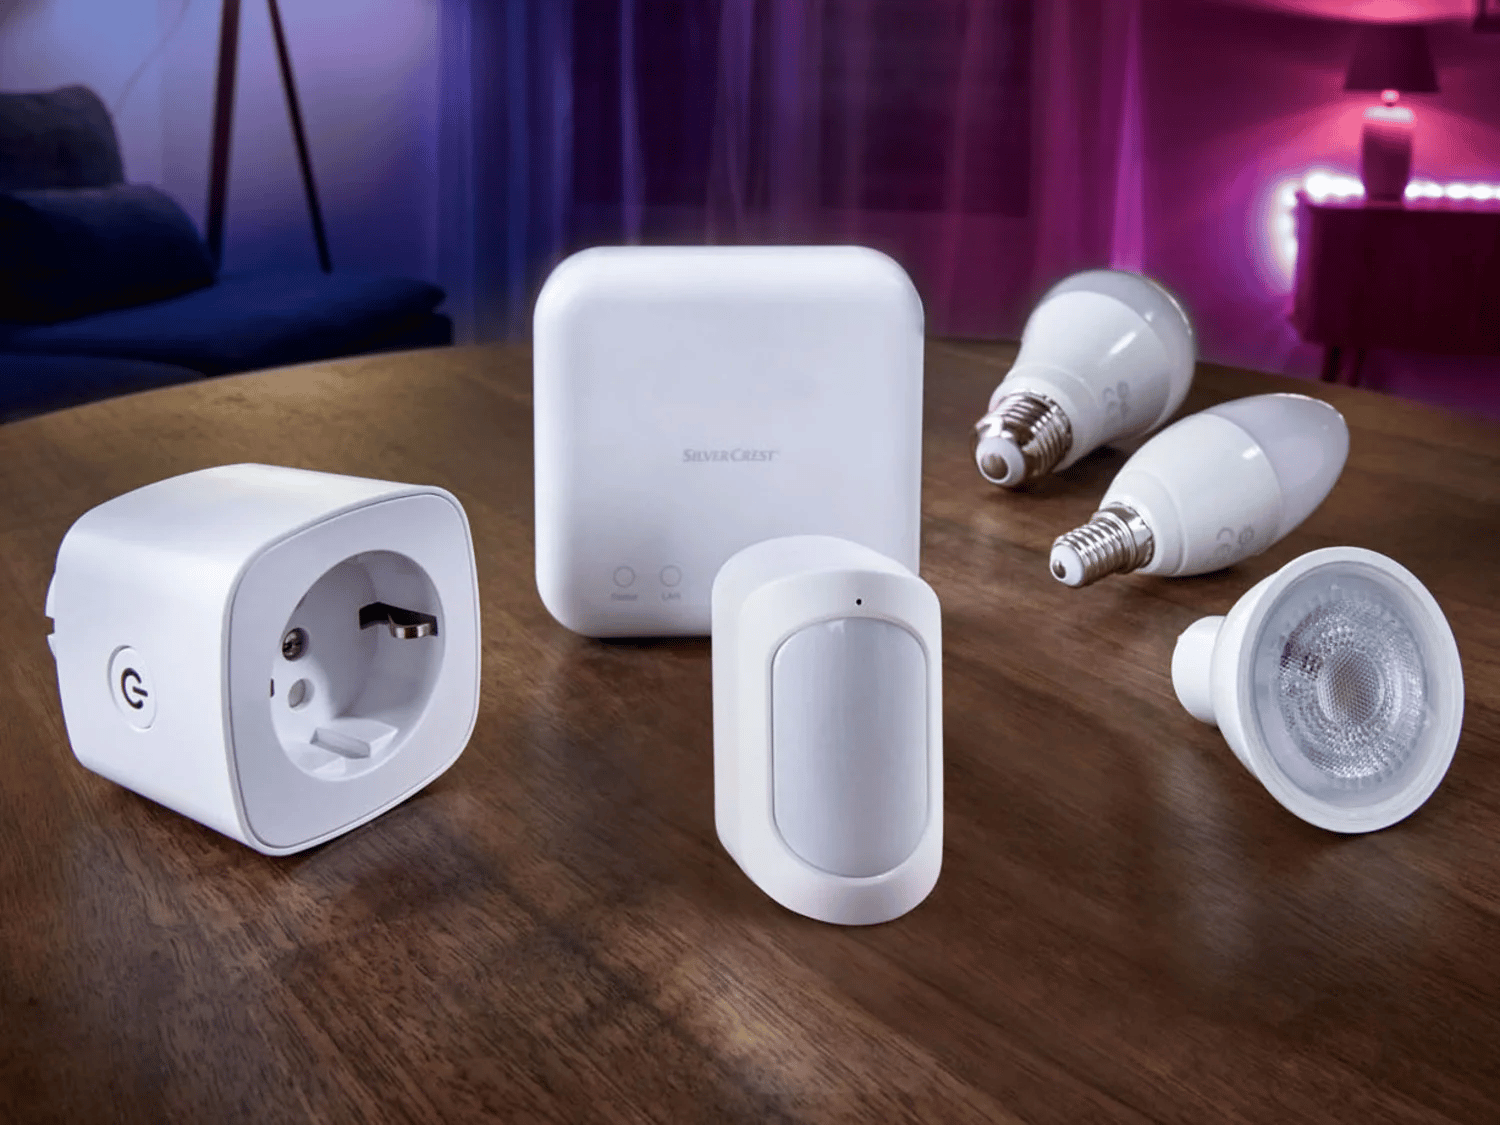 9,44€ Deal: Home-Gadgets (3 LED ,49€/Stück) ZigBee von für 3.0 Leuchtmittel LIDL - Smart